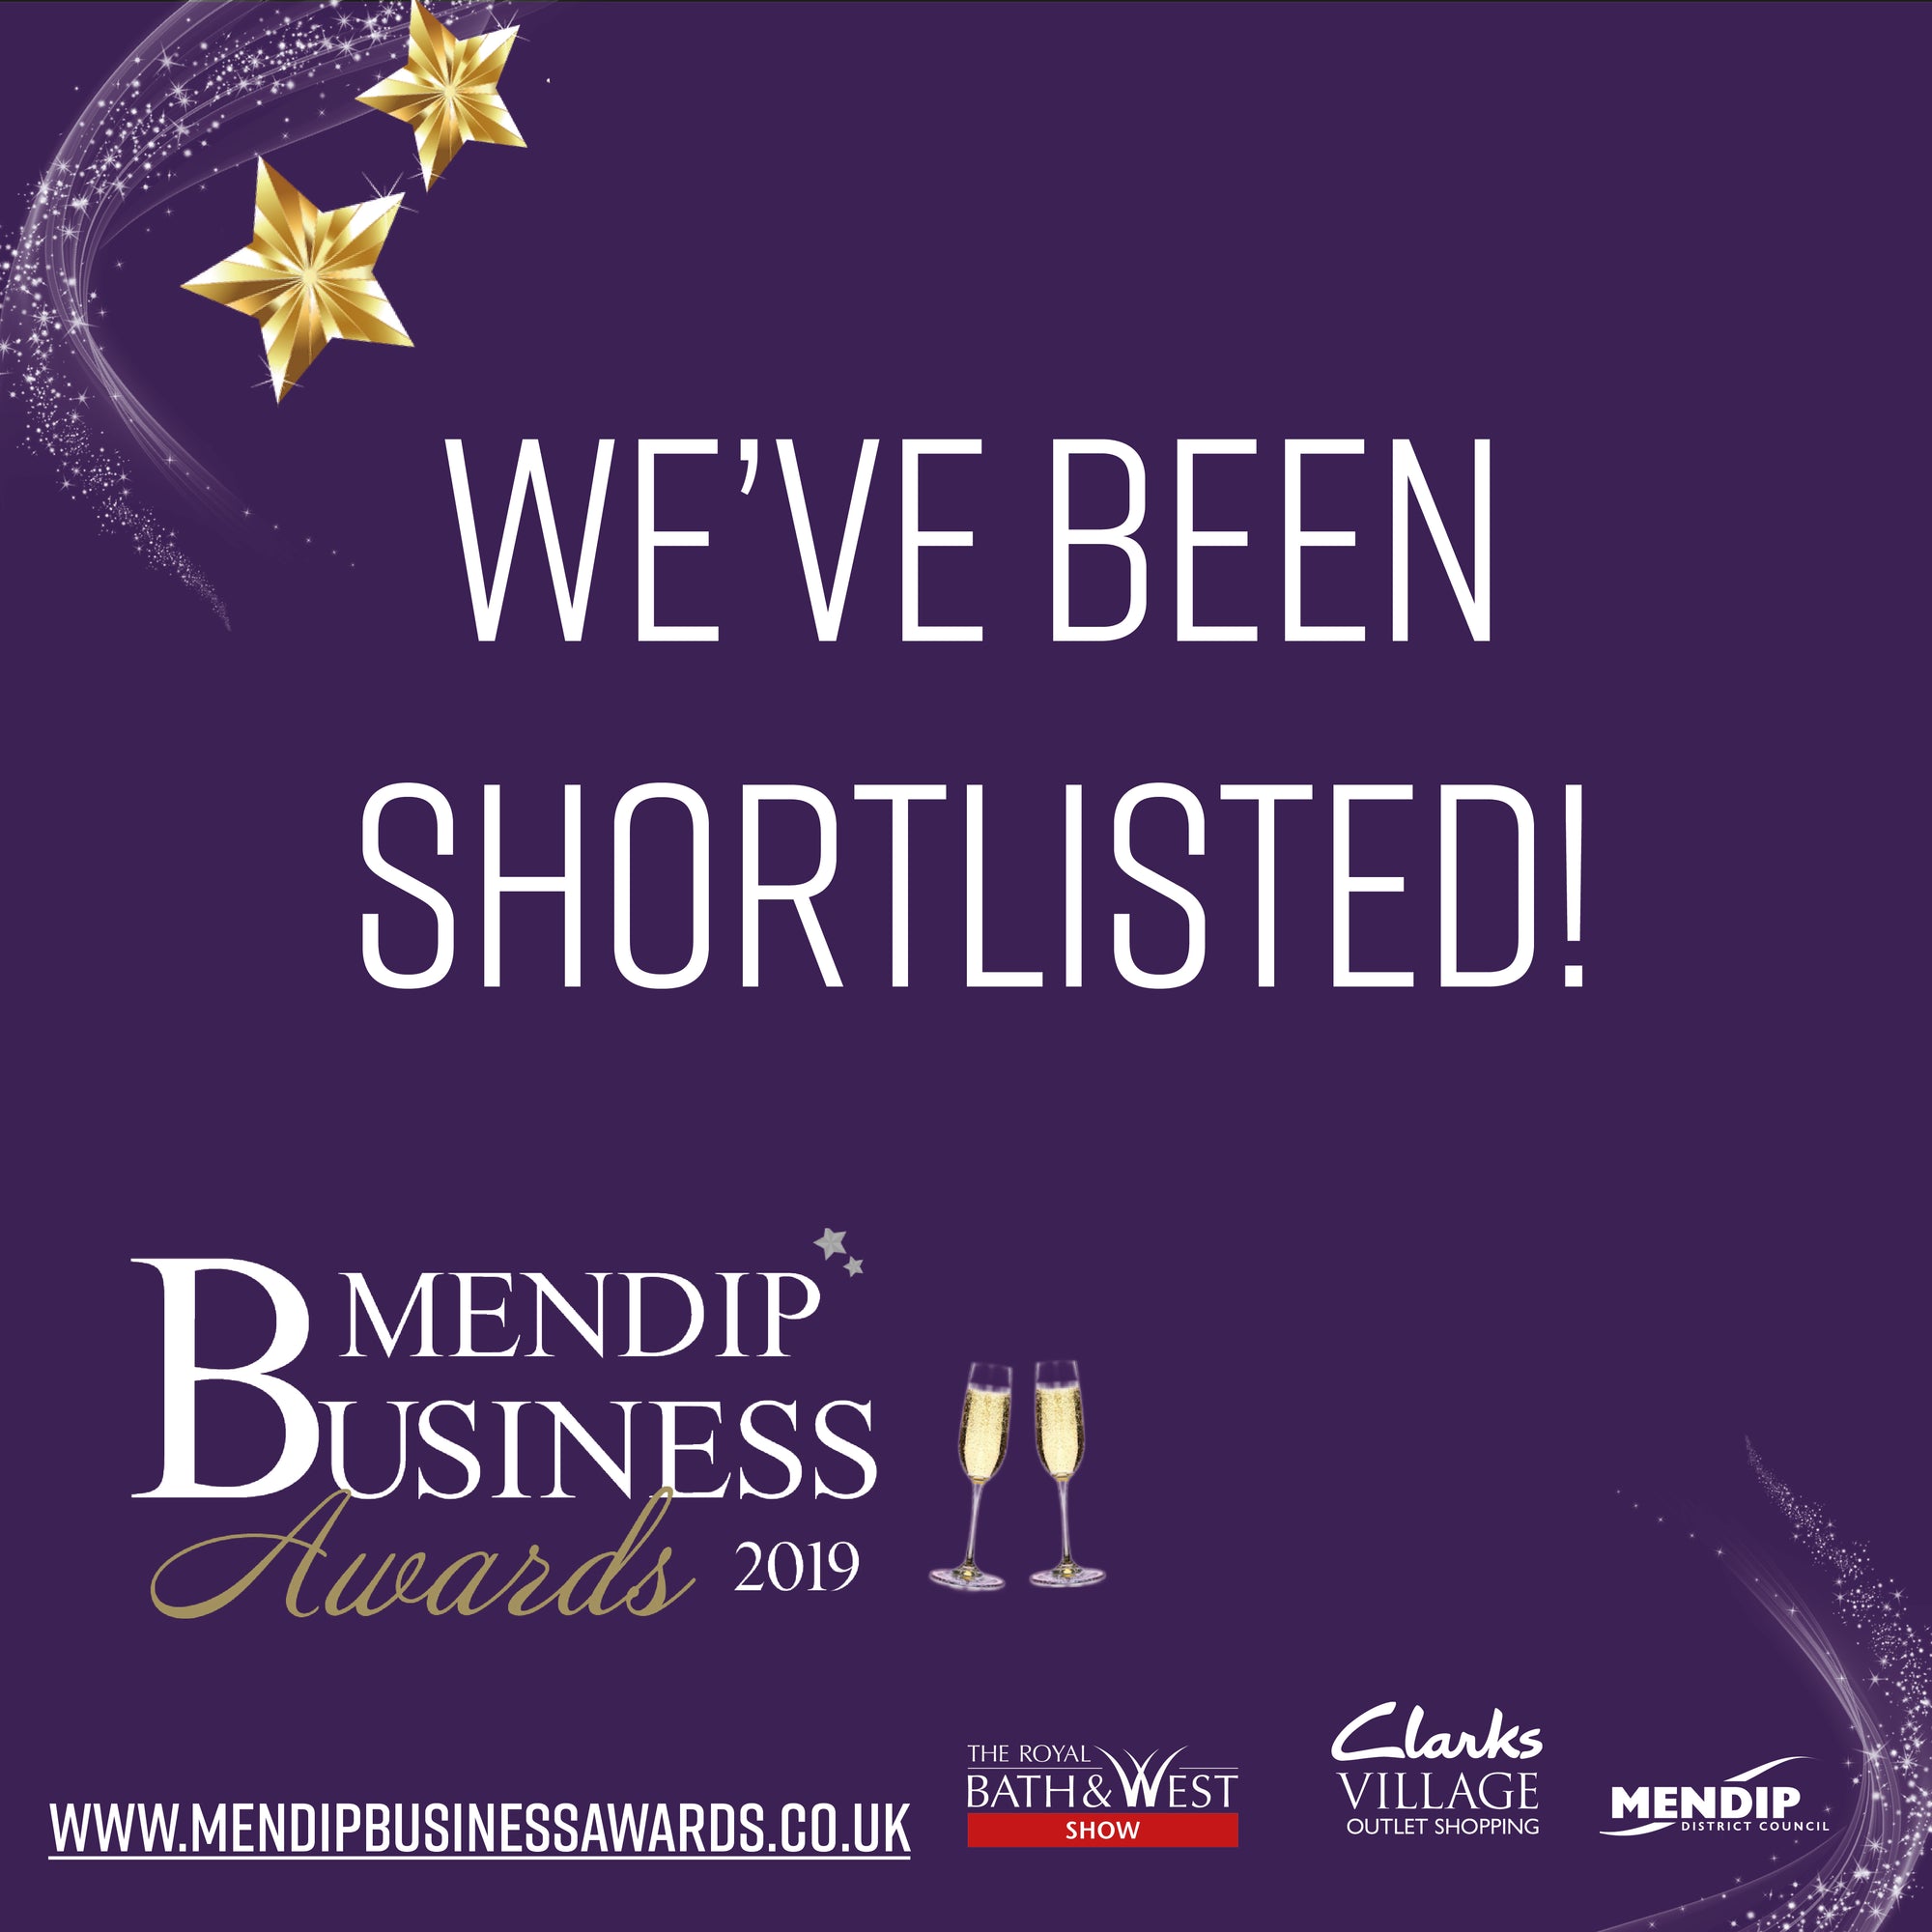 Mendip Business Awards 2019